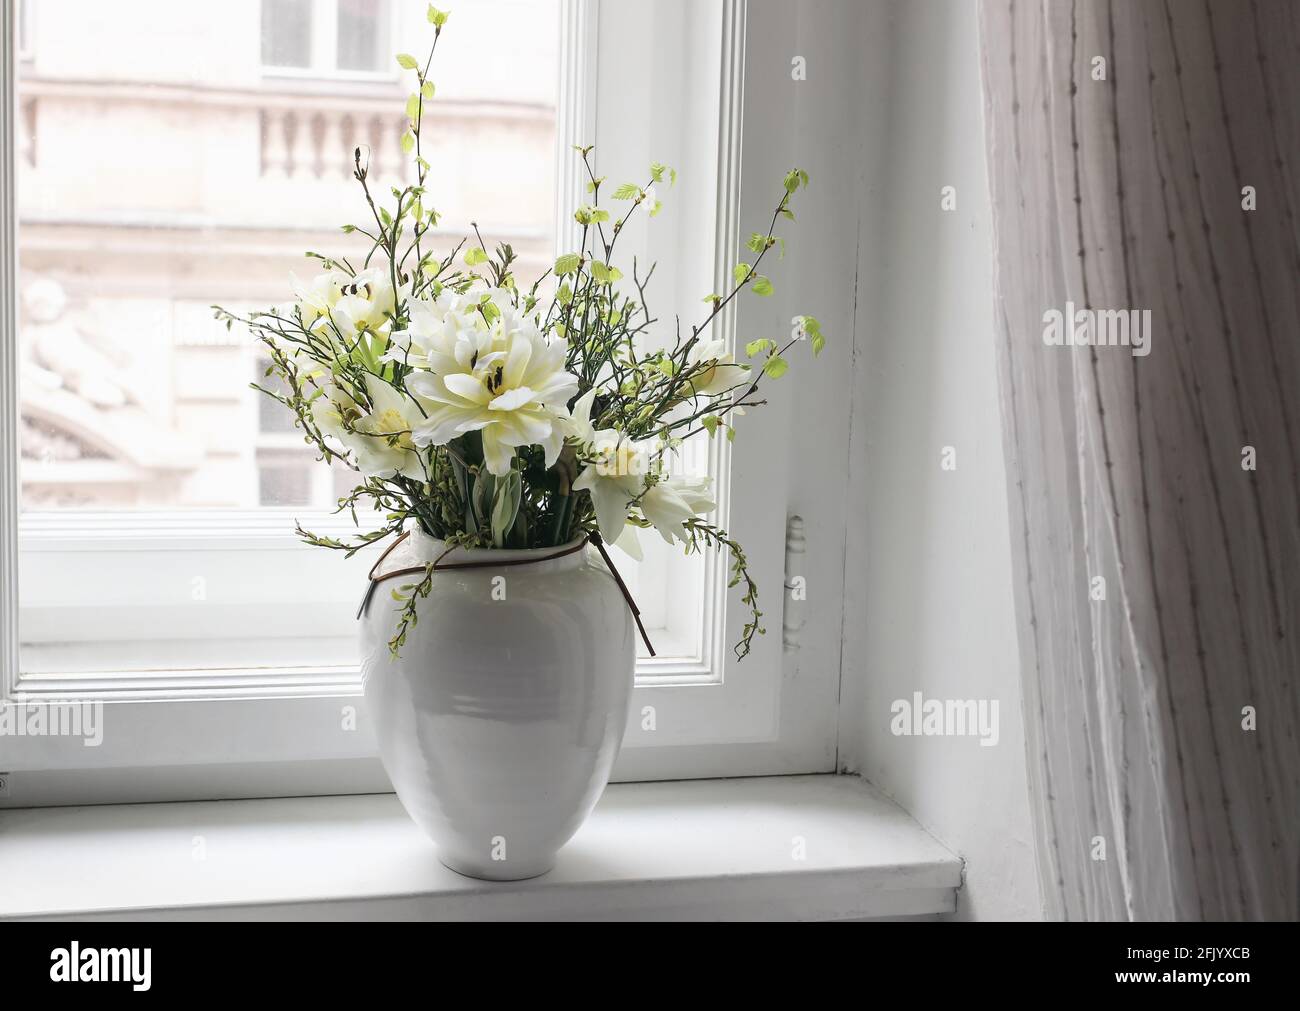 Le printemps de Pâques reste la vie. Bouquet floral sur le rebord de la fenêtre. Tulipes blanches et jaunes, fleurs de jonquilles et branches de bouleau vert et de myrtille Banque D'Images